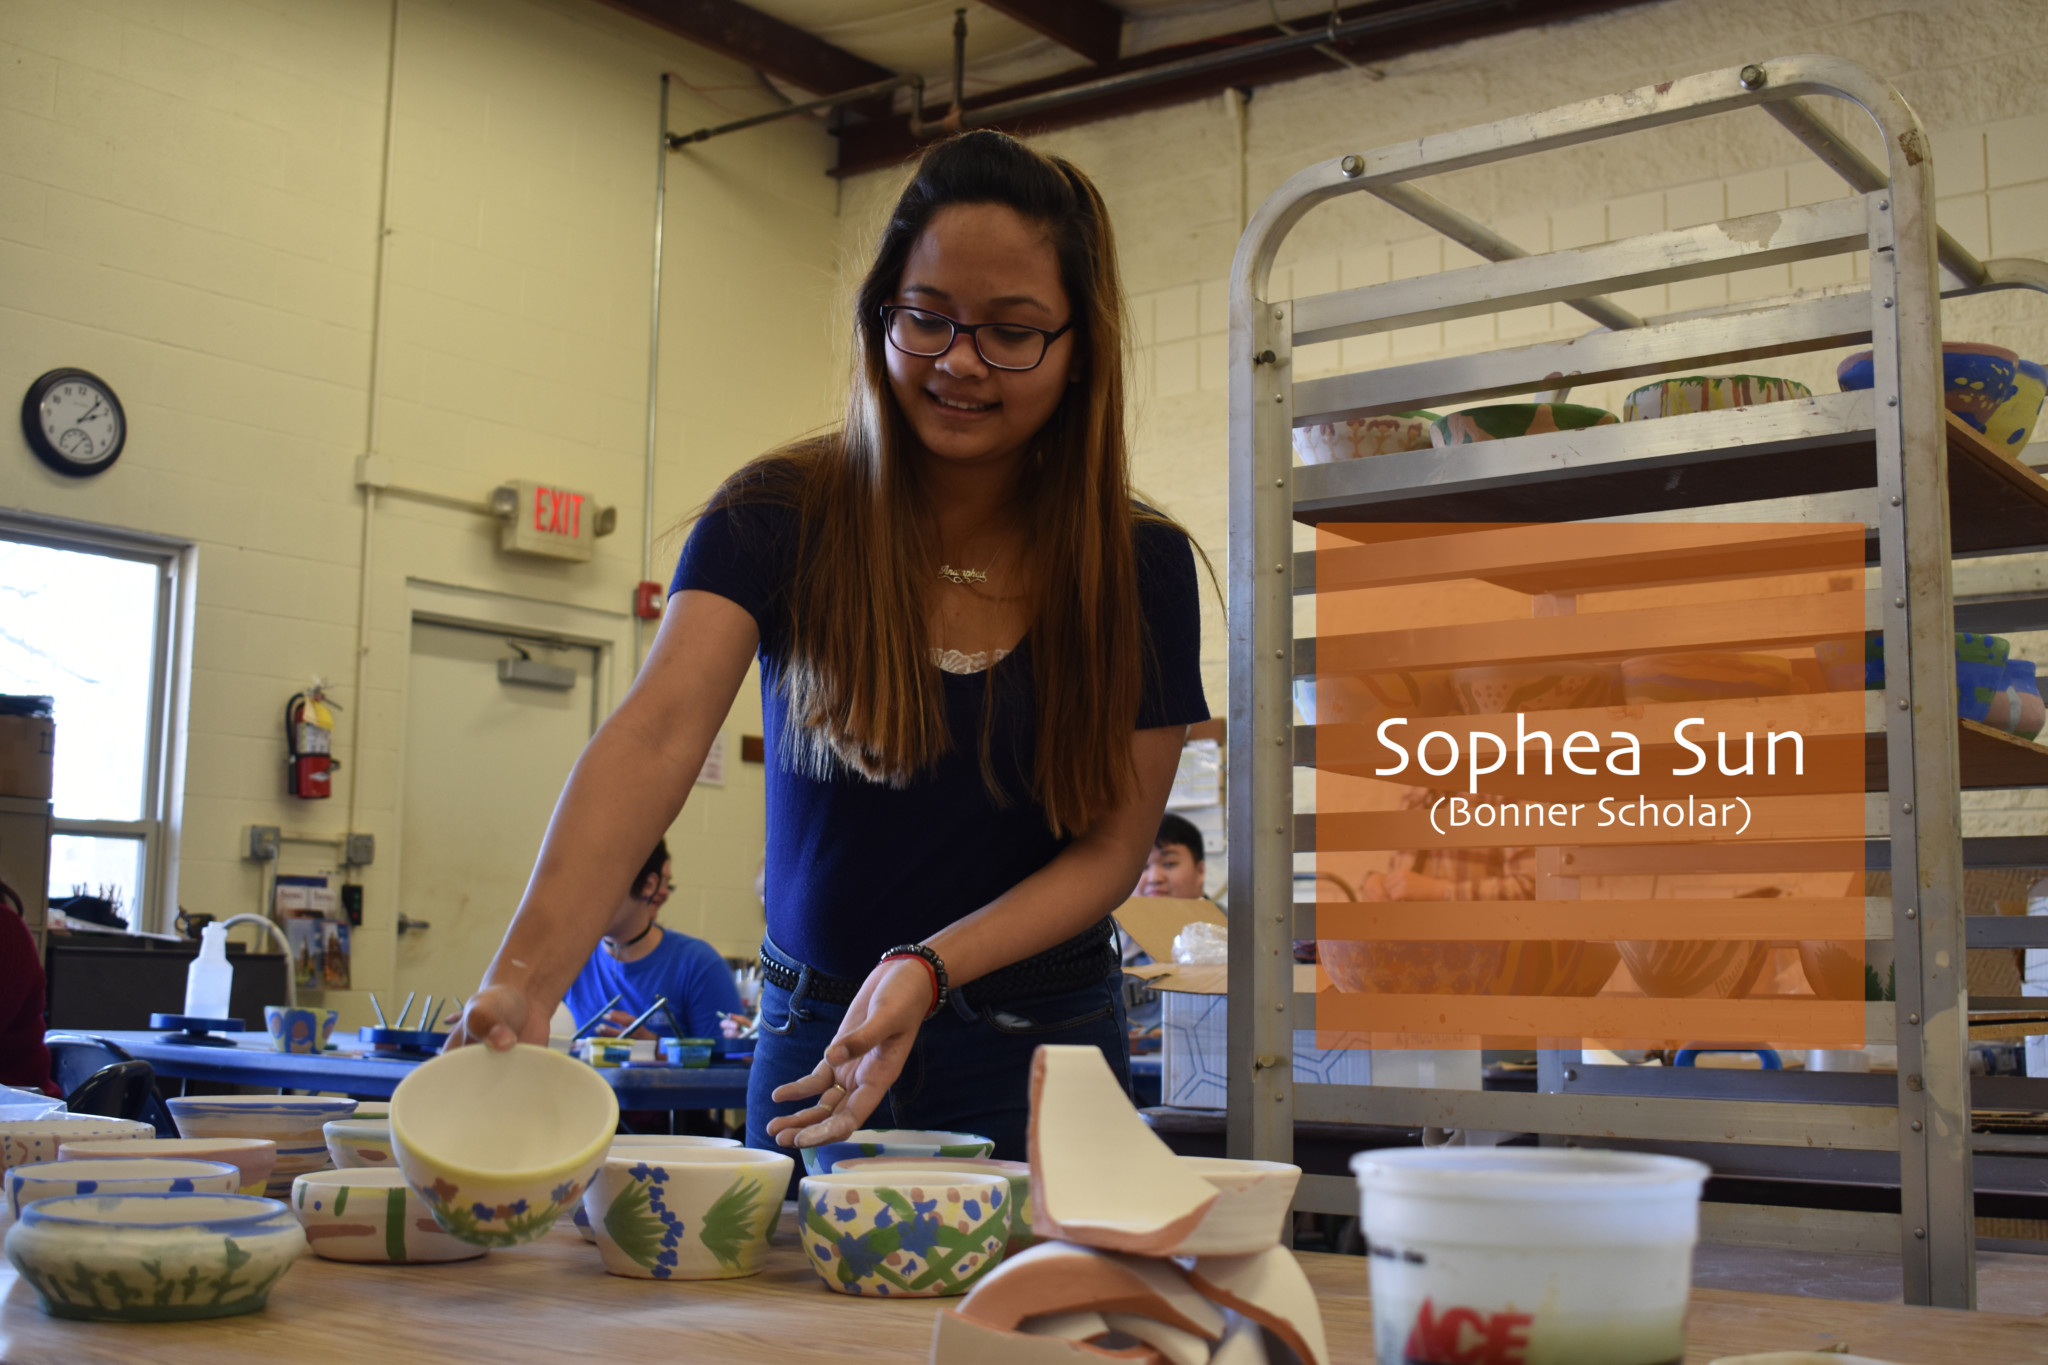 Sophea, a bonner scholar decorates bowls for Partner for Education